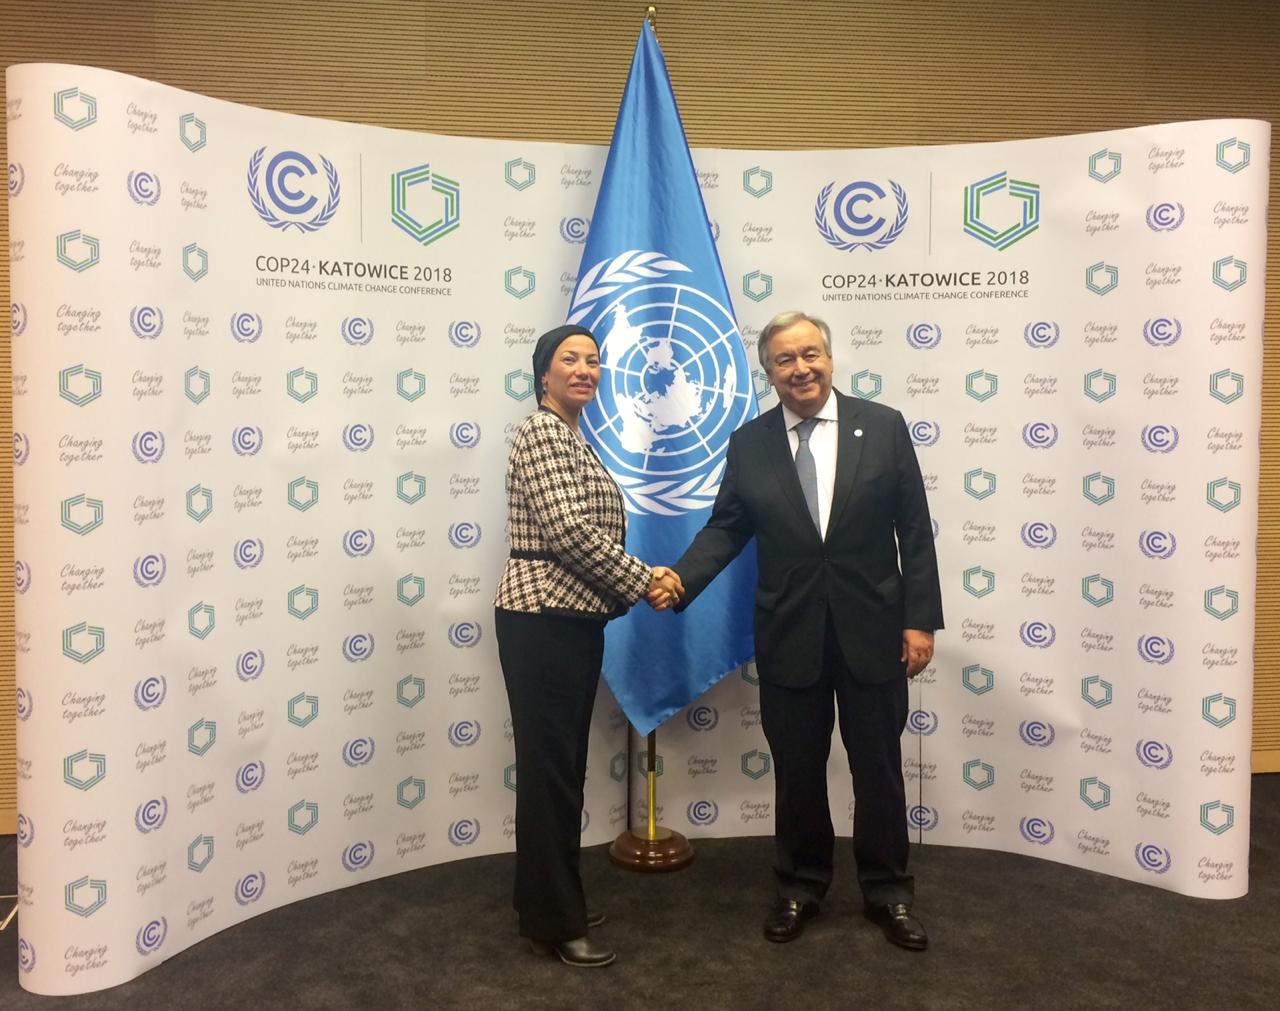   وزيرة البيئة تبحث قضية تغير المناخ ودور مصر المحوري بيئيًّا